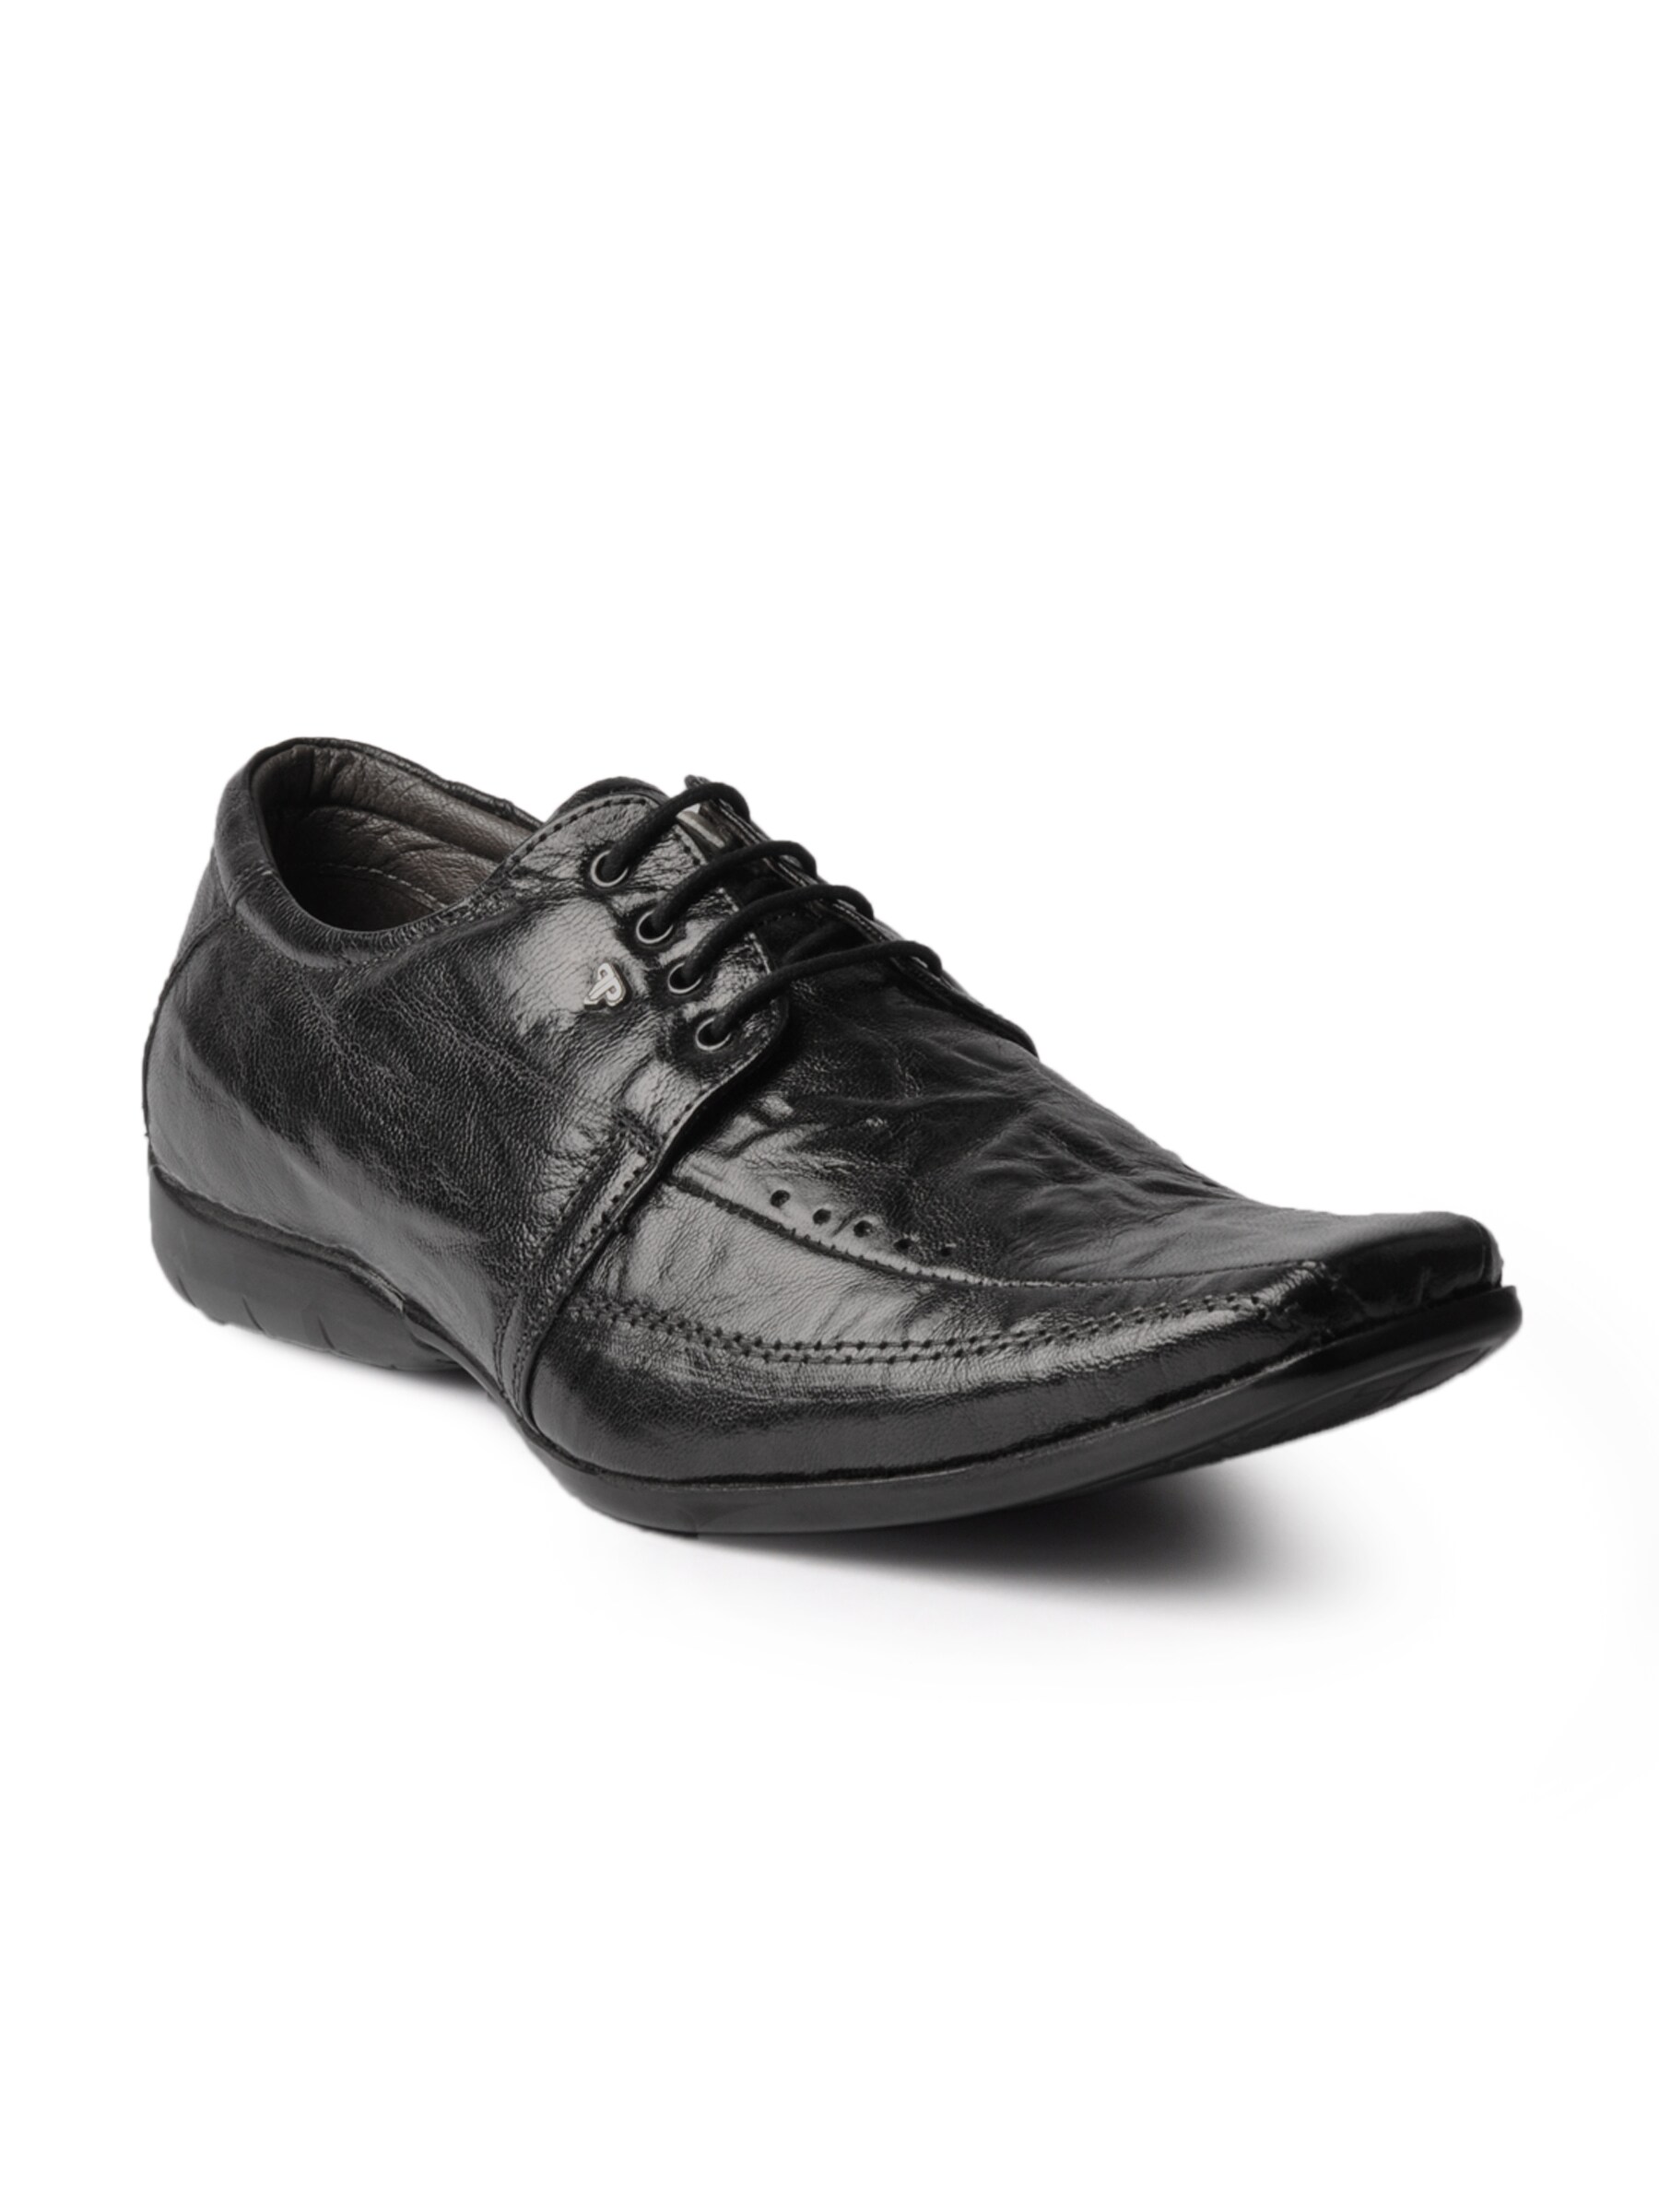 Provogue Men Formal Black Formal Shoes